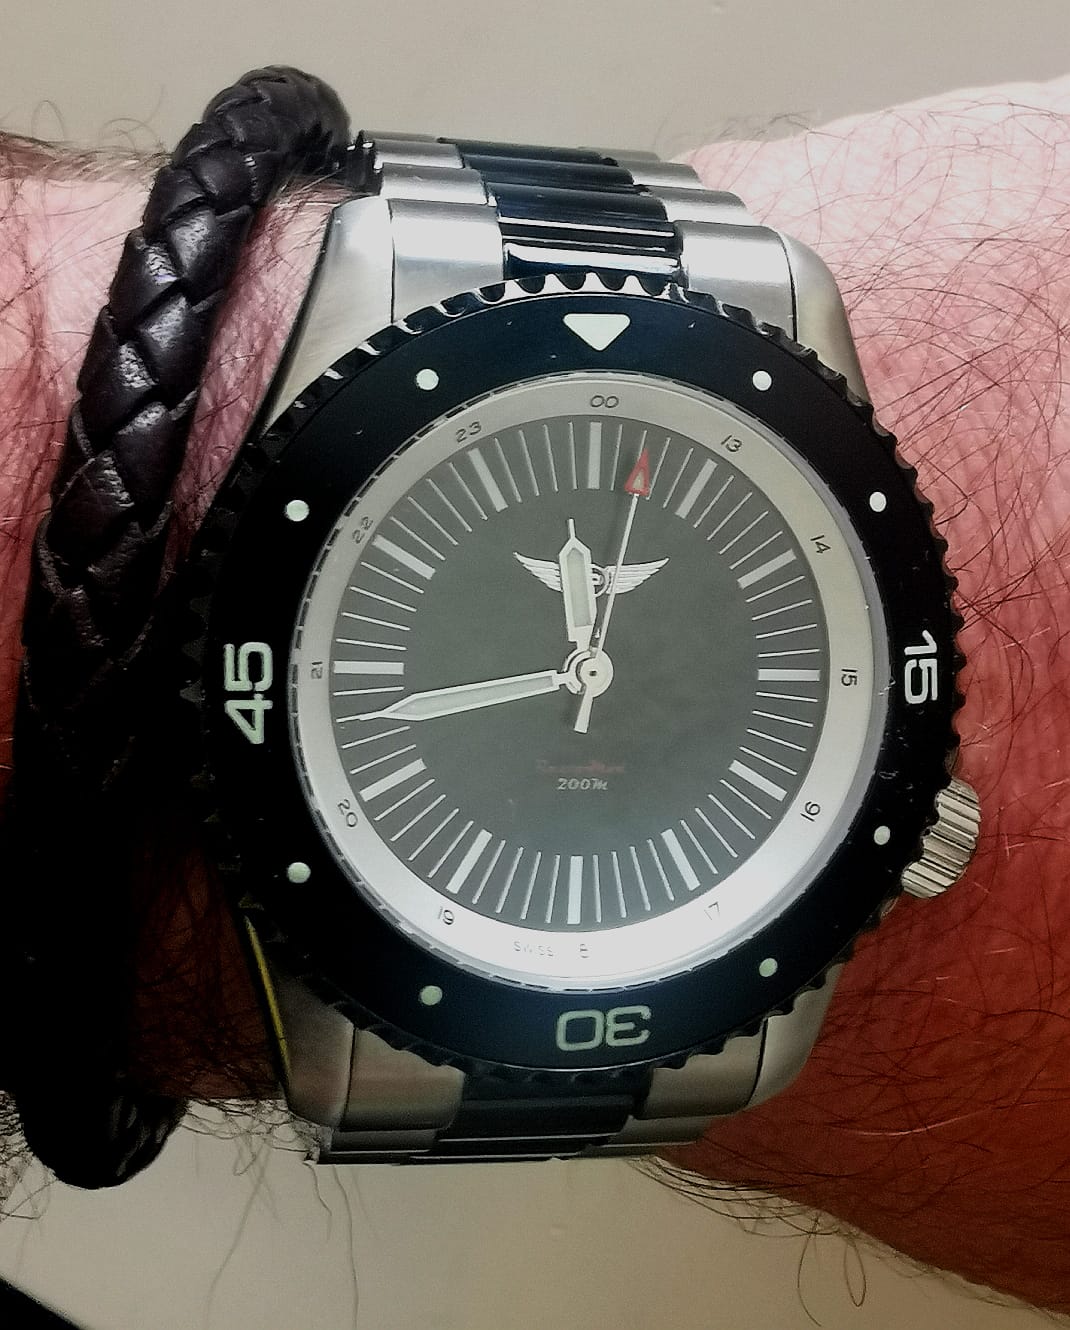 Compañía Propeller Watch - Colección RestoMod.